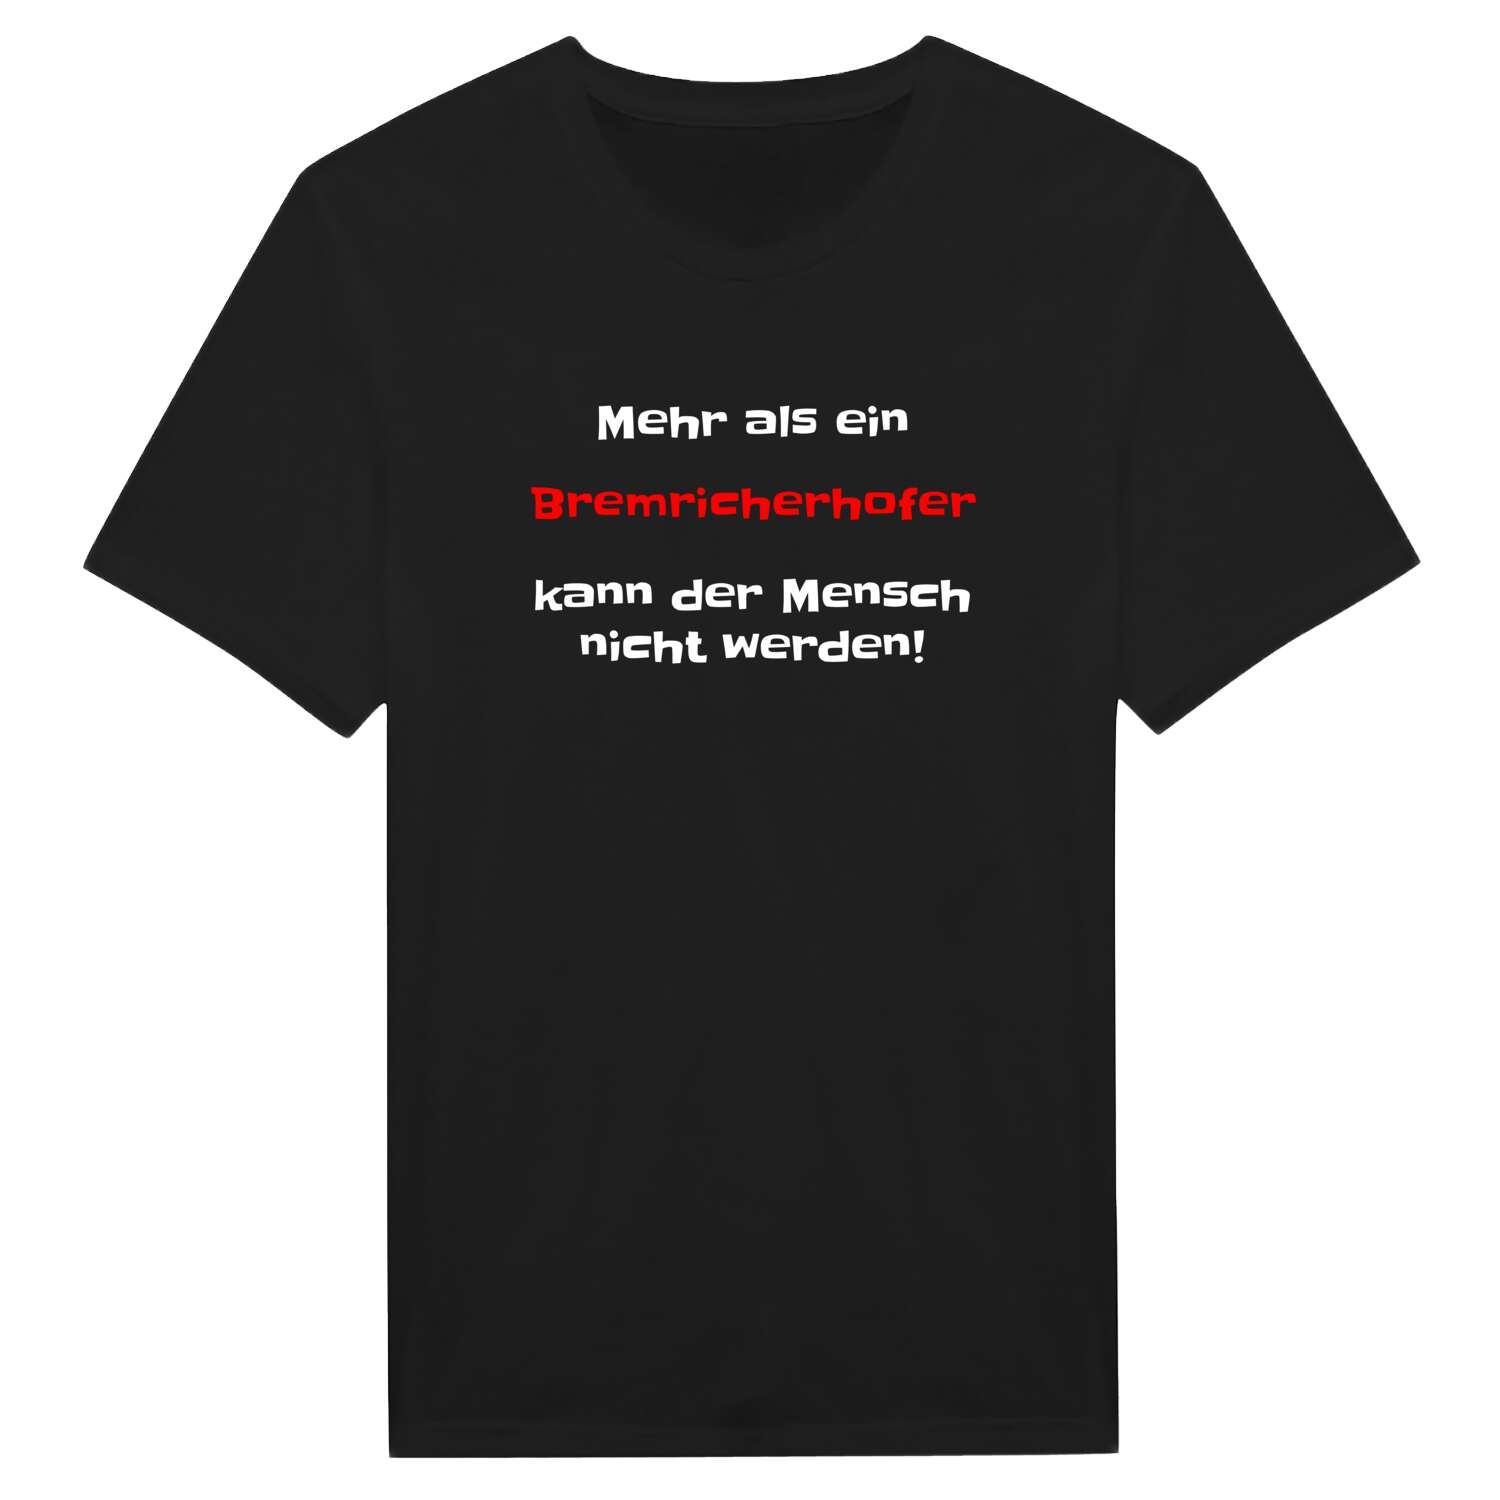 Bremricherhof T-Shirt »Mehr als ein«